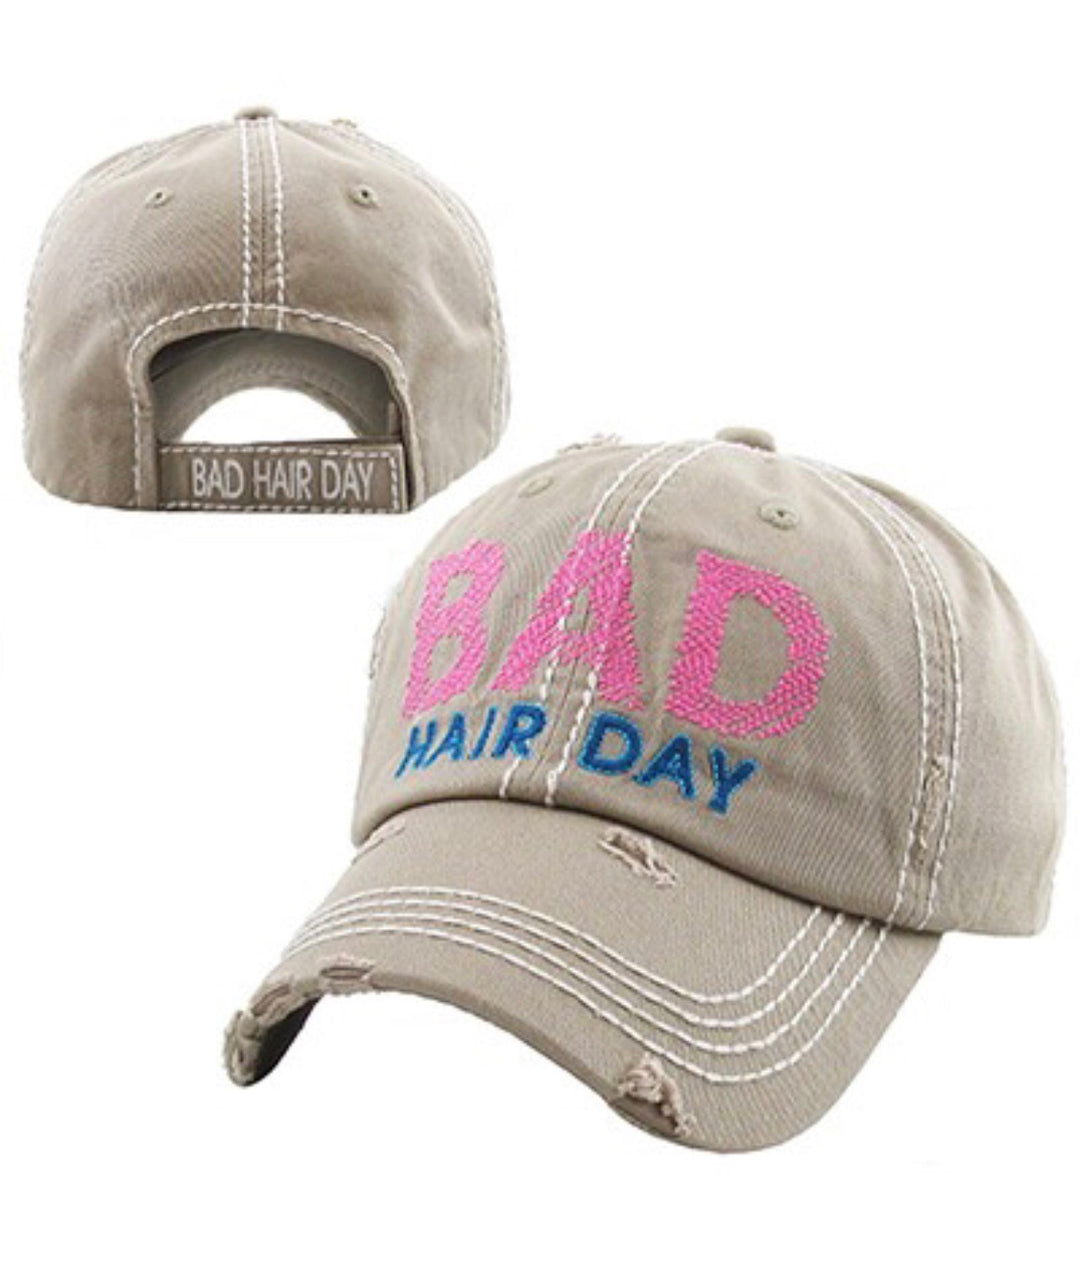 BAD Hair Day Vintage Baseball Cap Hat - Khaki